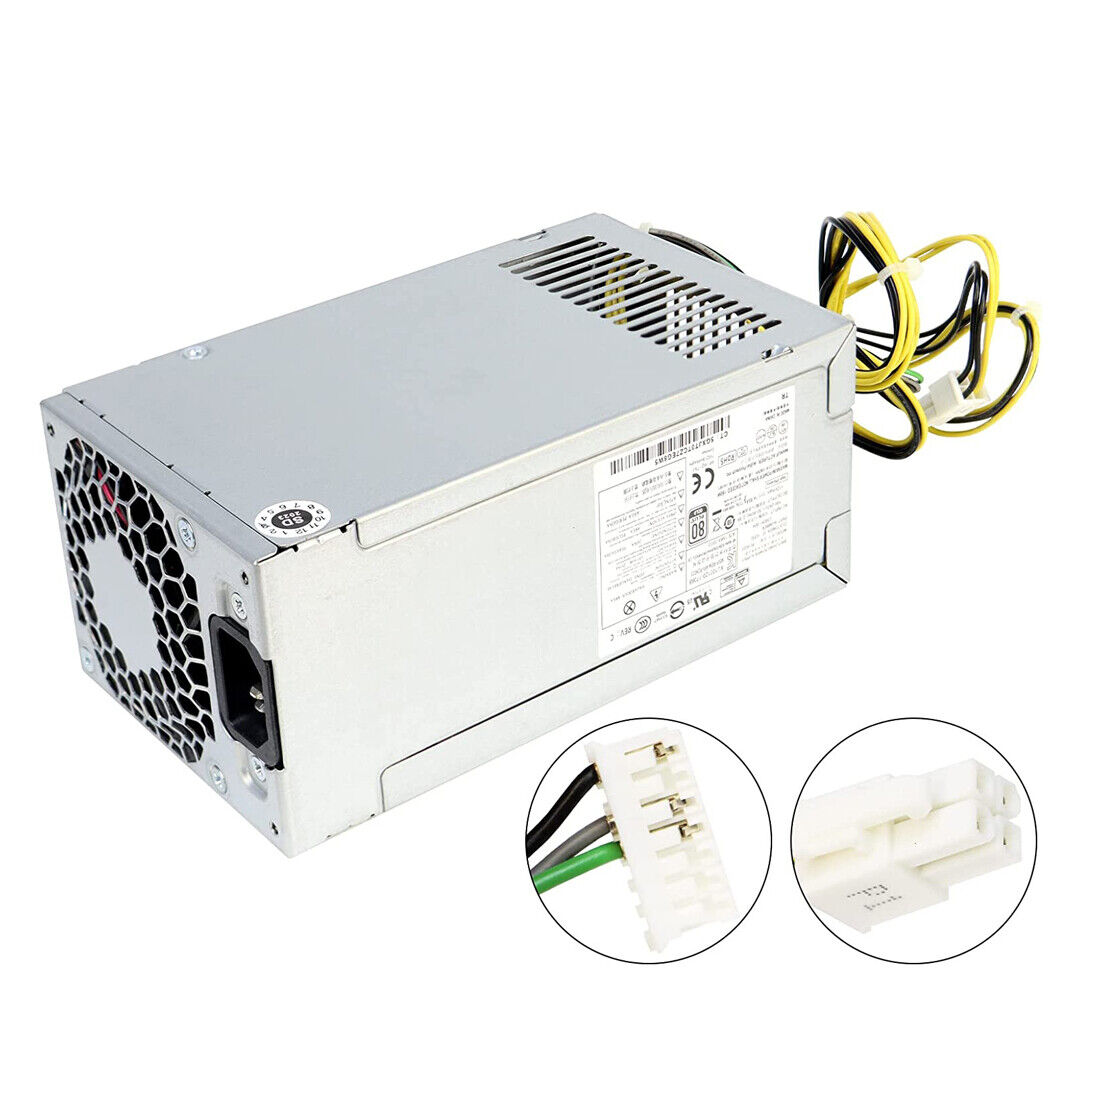 New L08261-004 180W PCH023 Power Supply Fits HP ProDesk G5 L70042-004 L08261-006